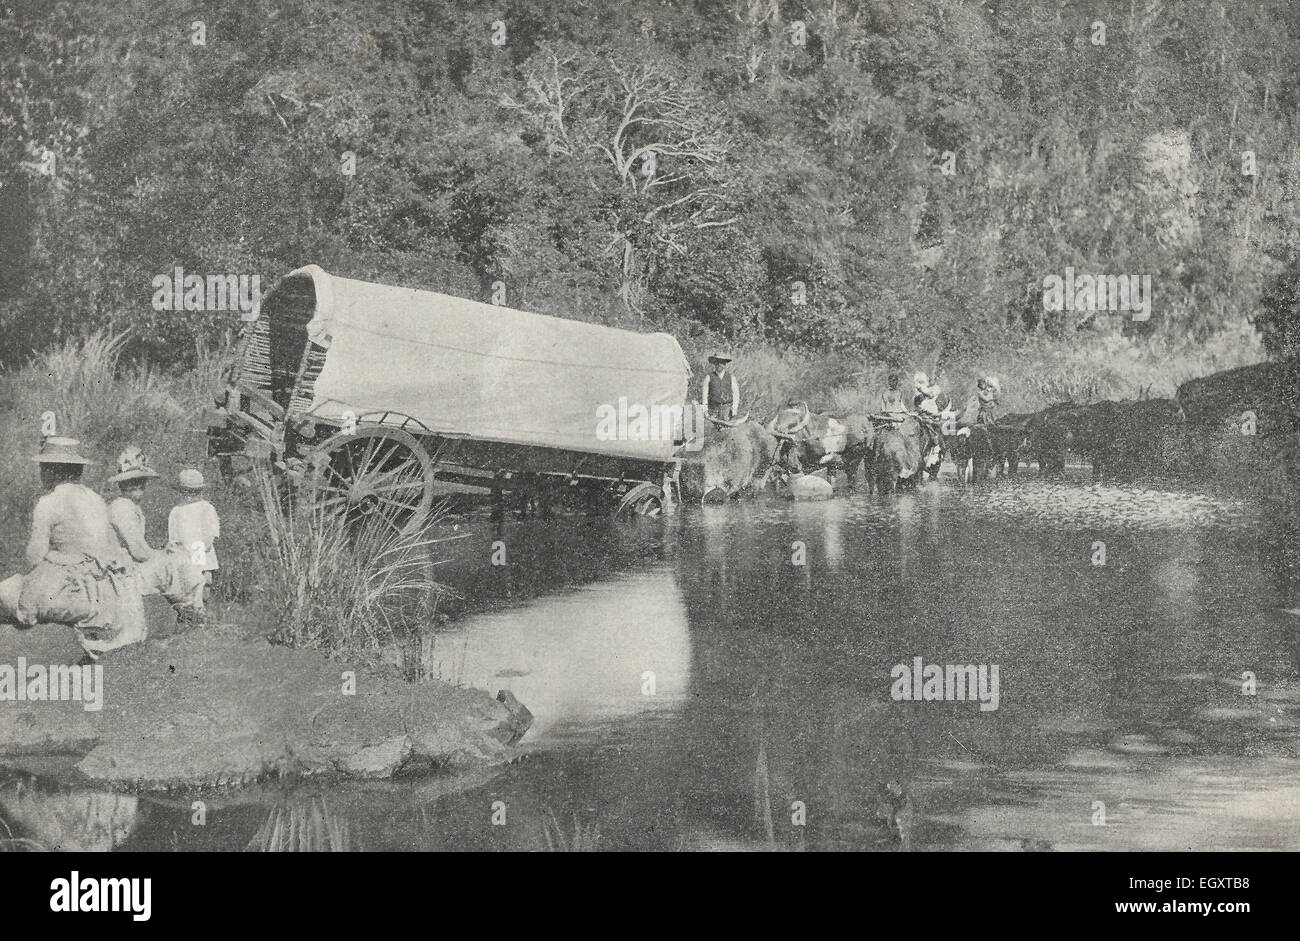 Ein Reisender Schwierigkeiten. Diese sperrigen Wagen ist die Überquerung der Ford und wurde nicht gut verwaltet, Südafrika, ca. 1895 Stockfoto